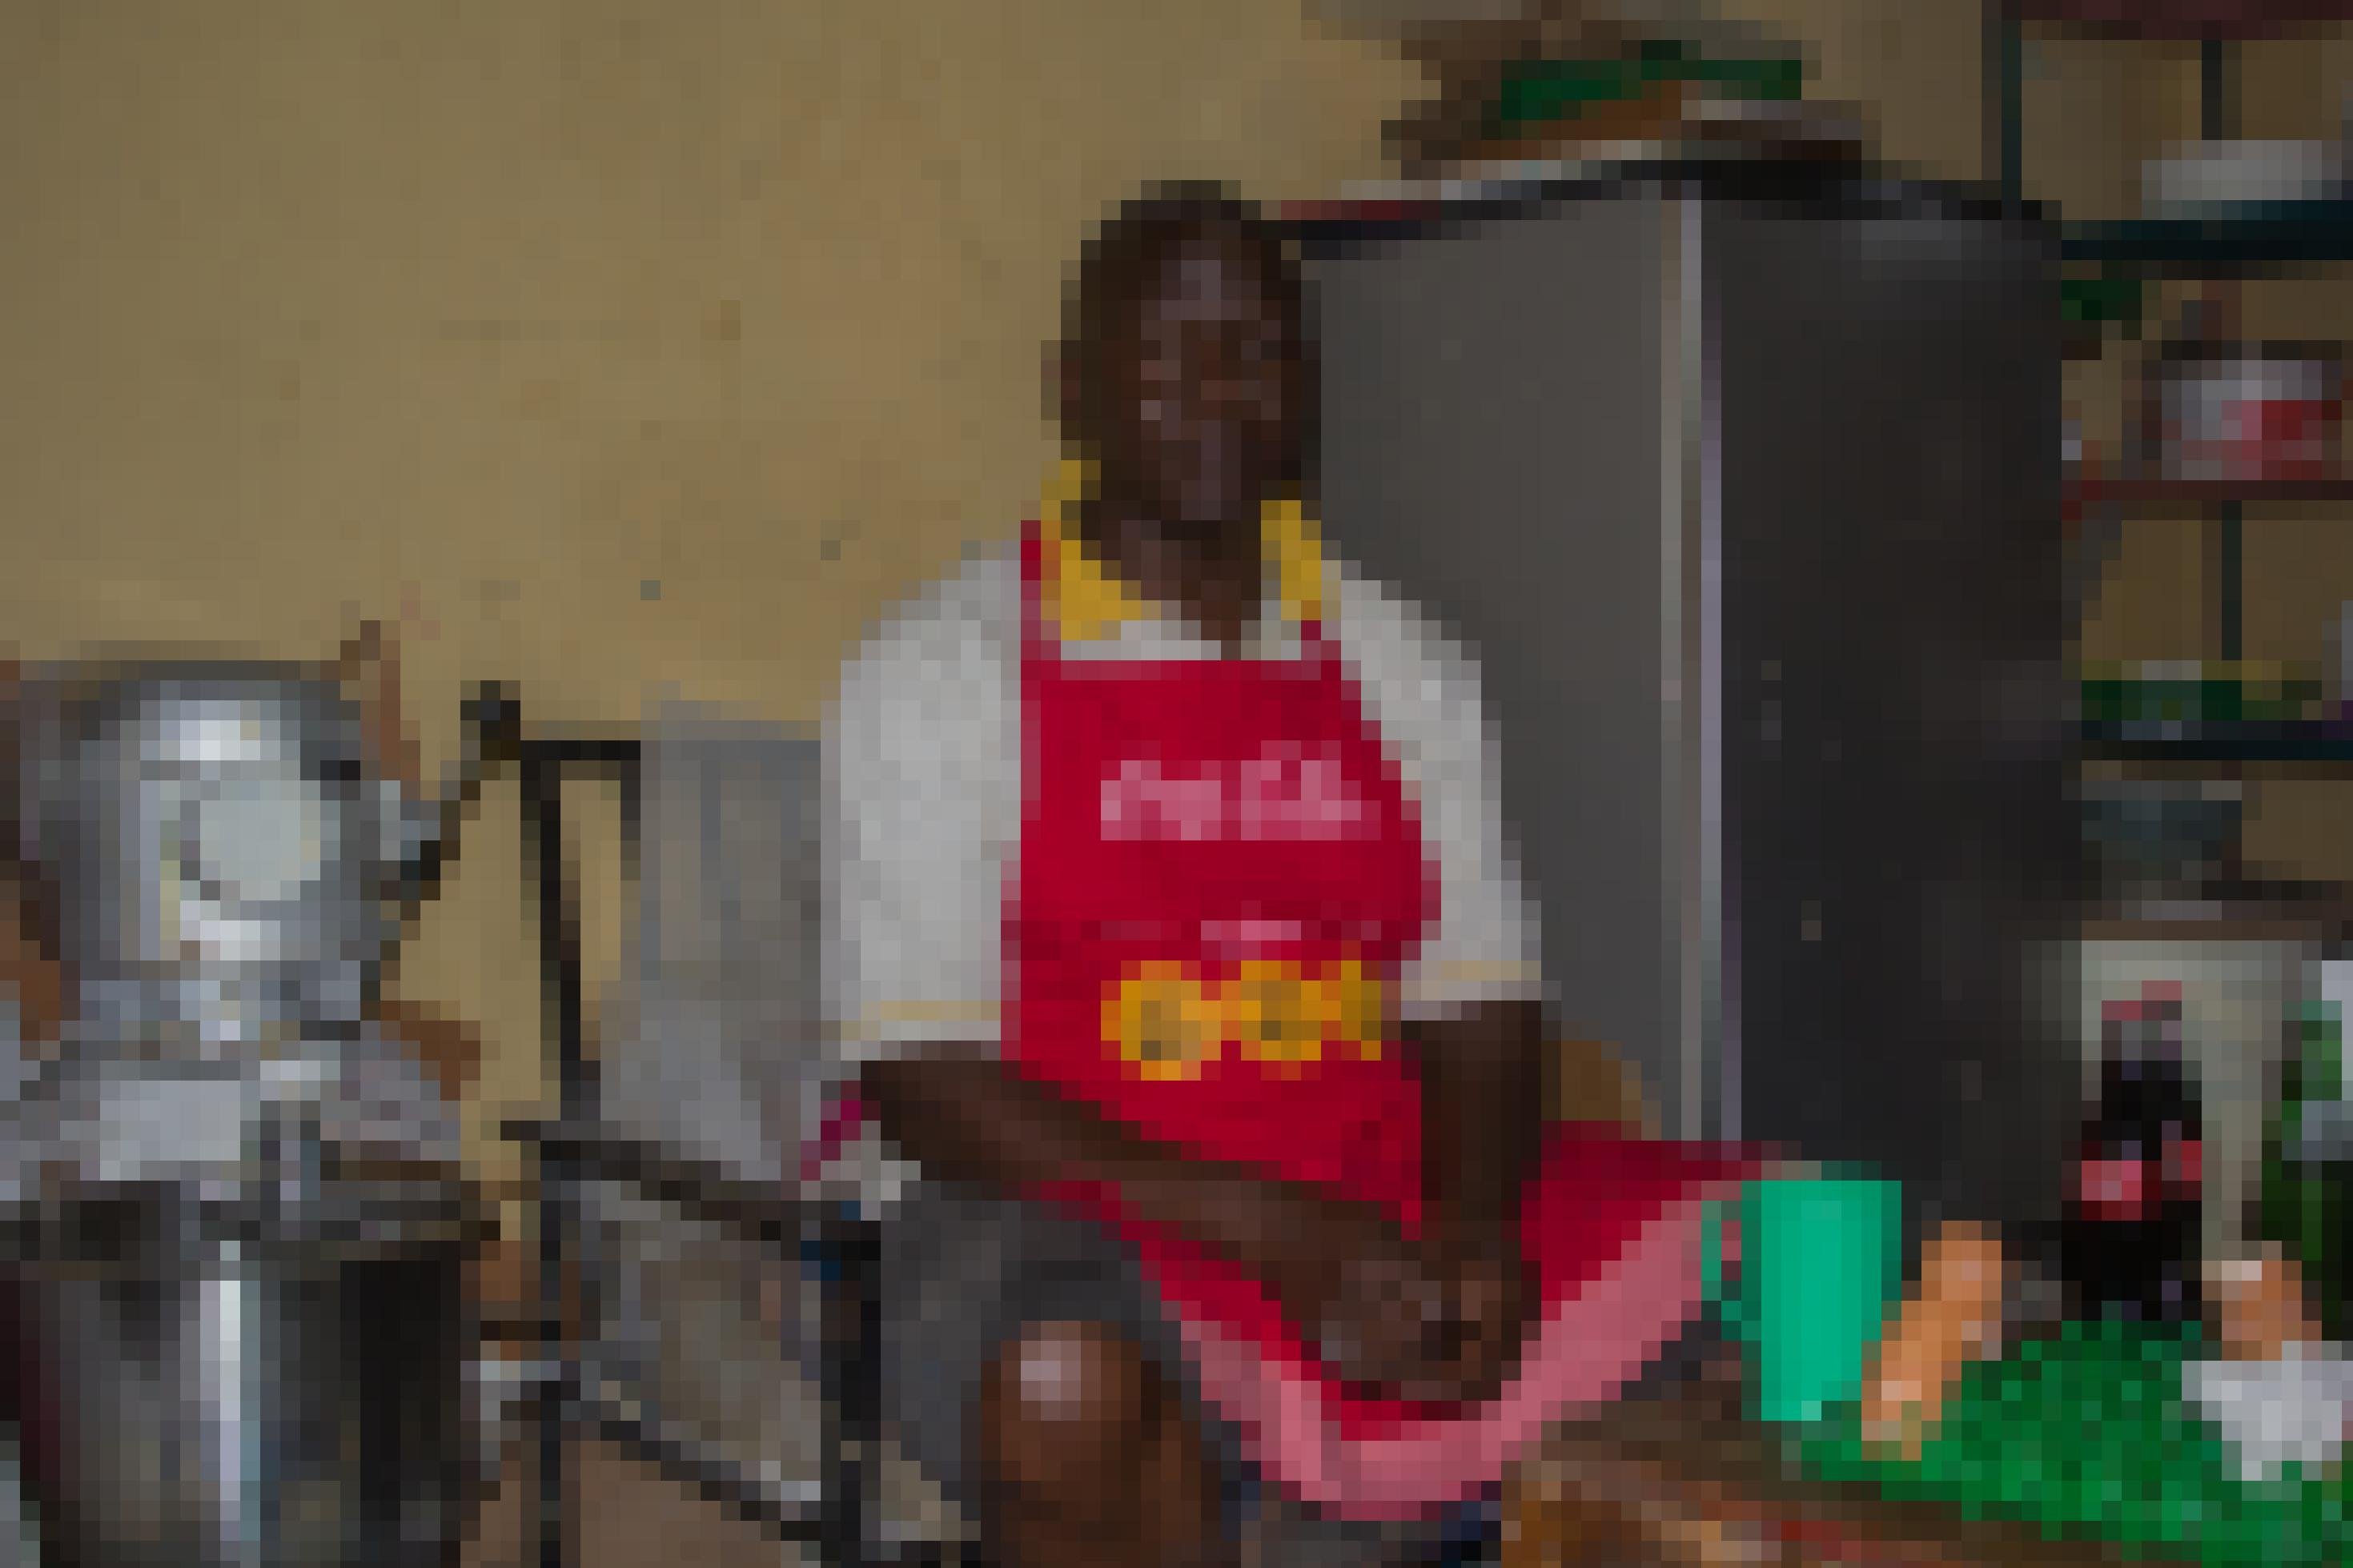 Ein Mann mit roter Schürze sitzt auf einem Stuhl in einem engen Raum. Neben ihm befindet sich ein Kühlschrank und eine Rührmaschine.